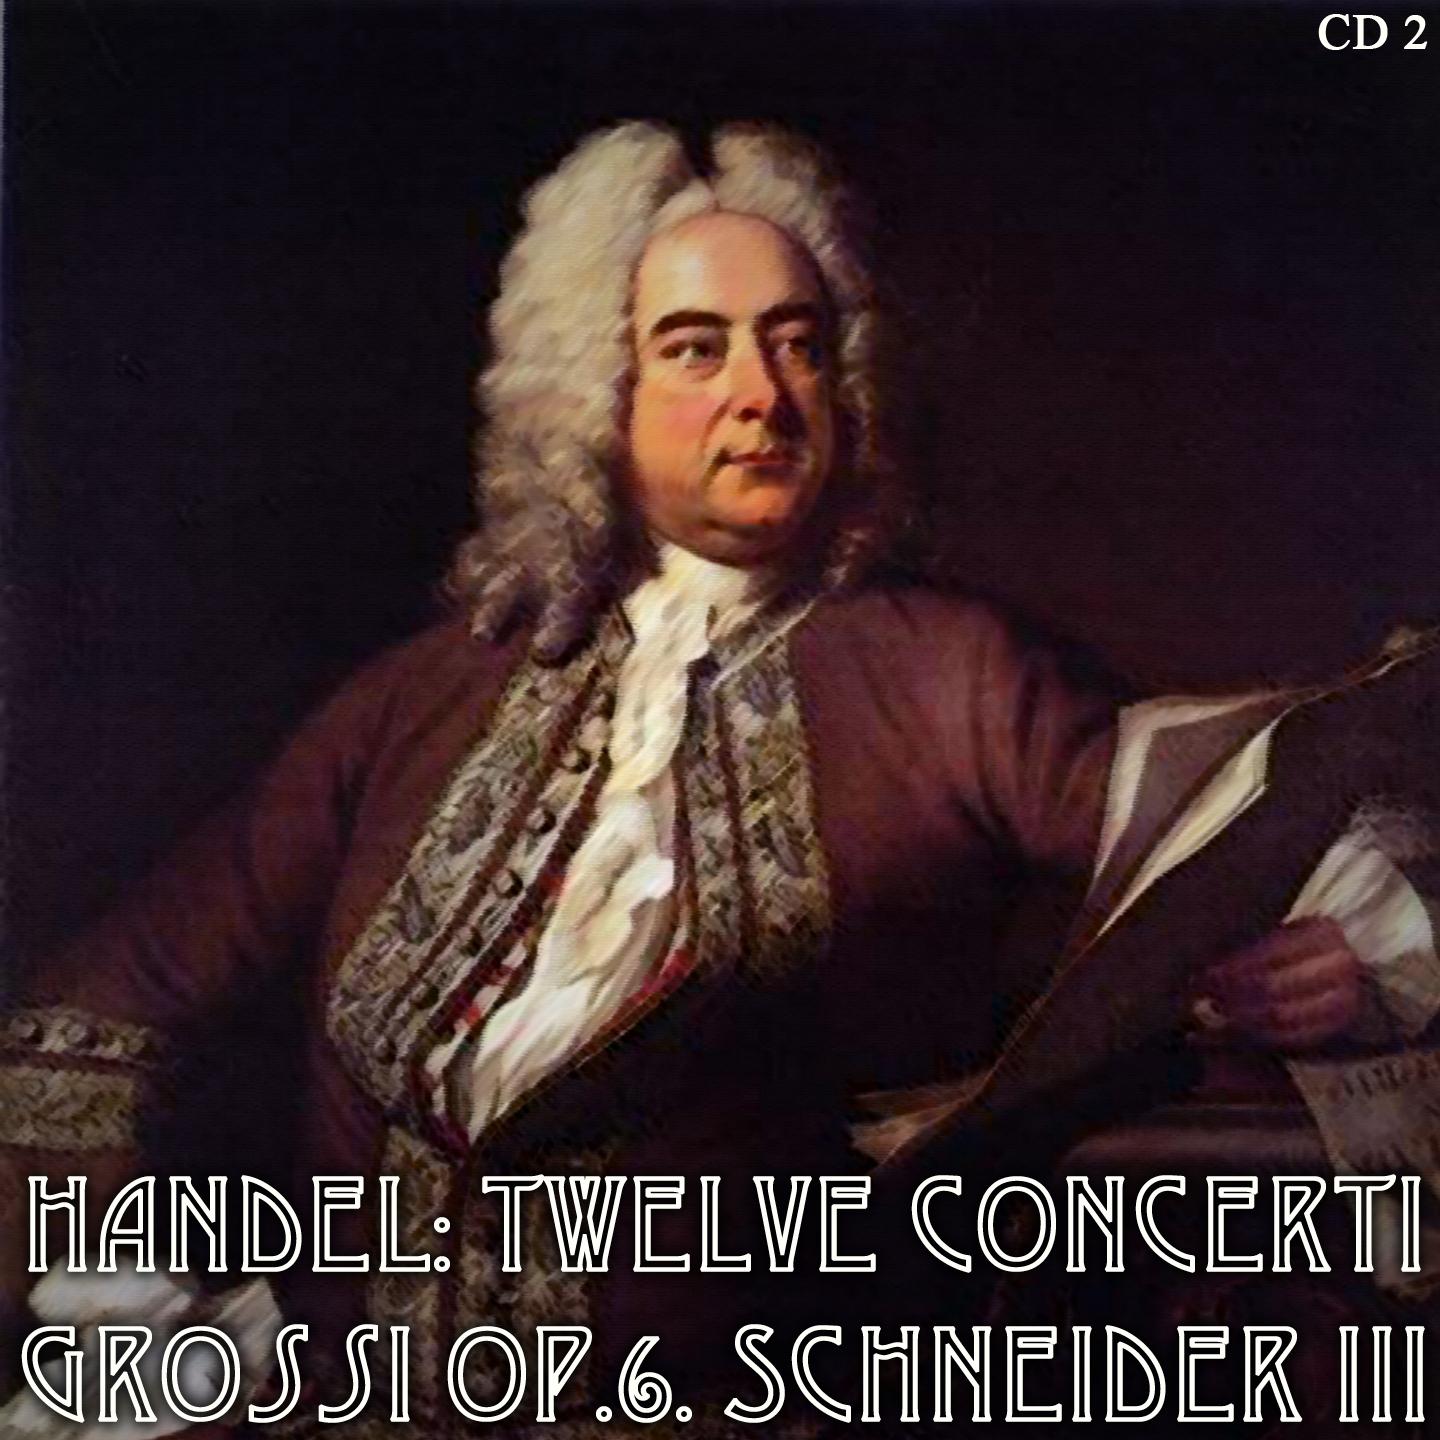 Handel: Twelve Concerti Grossi Op.6. Schneider III CD2